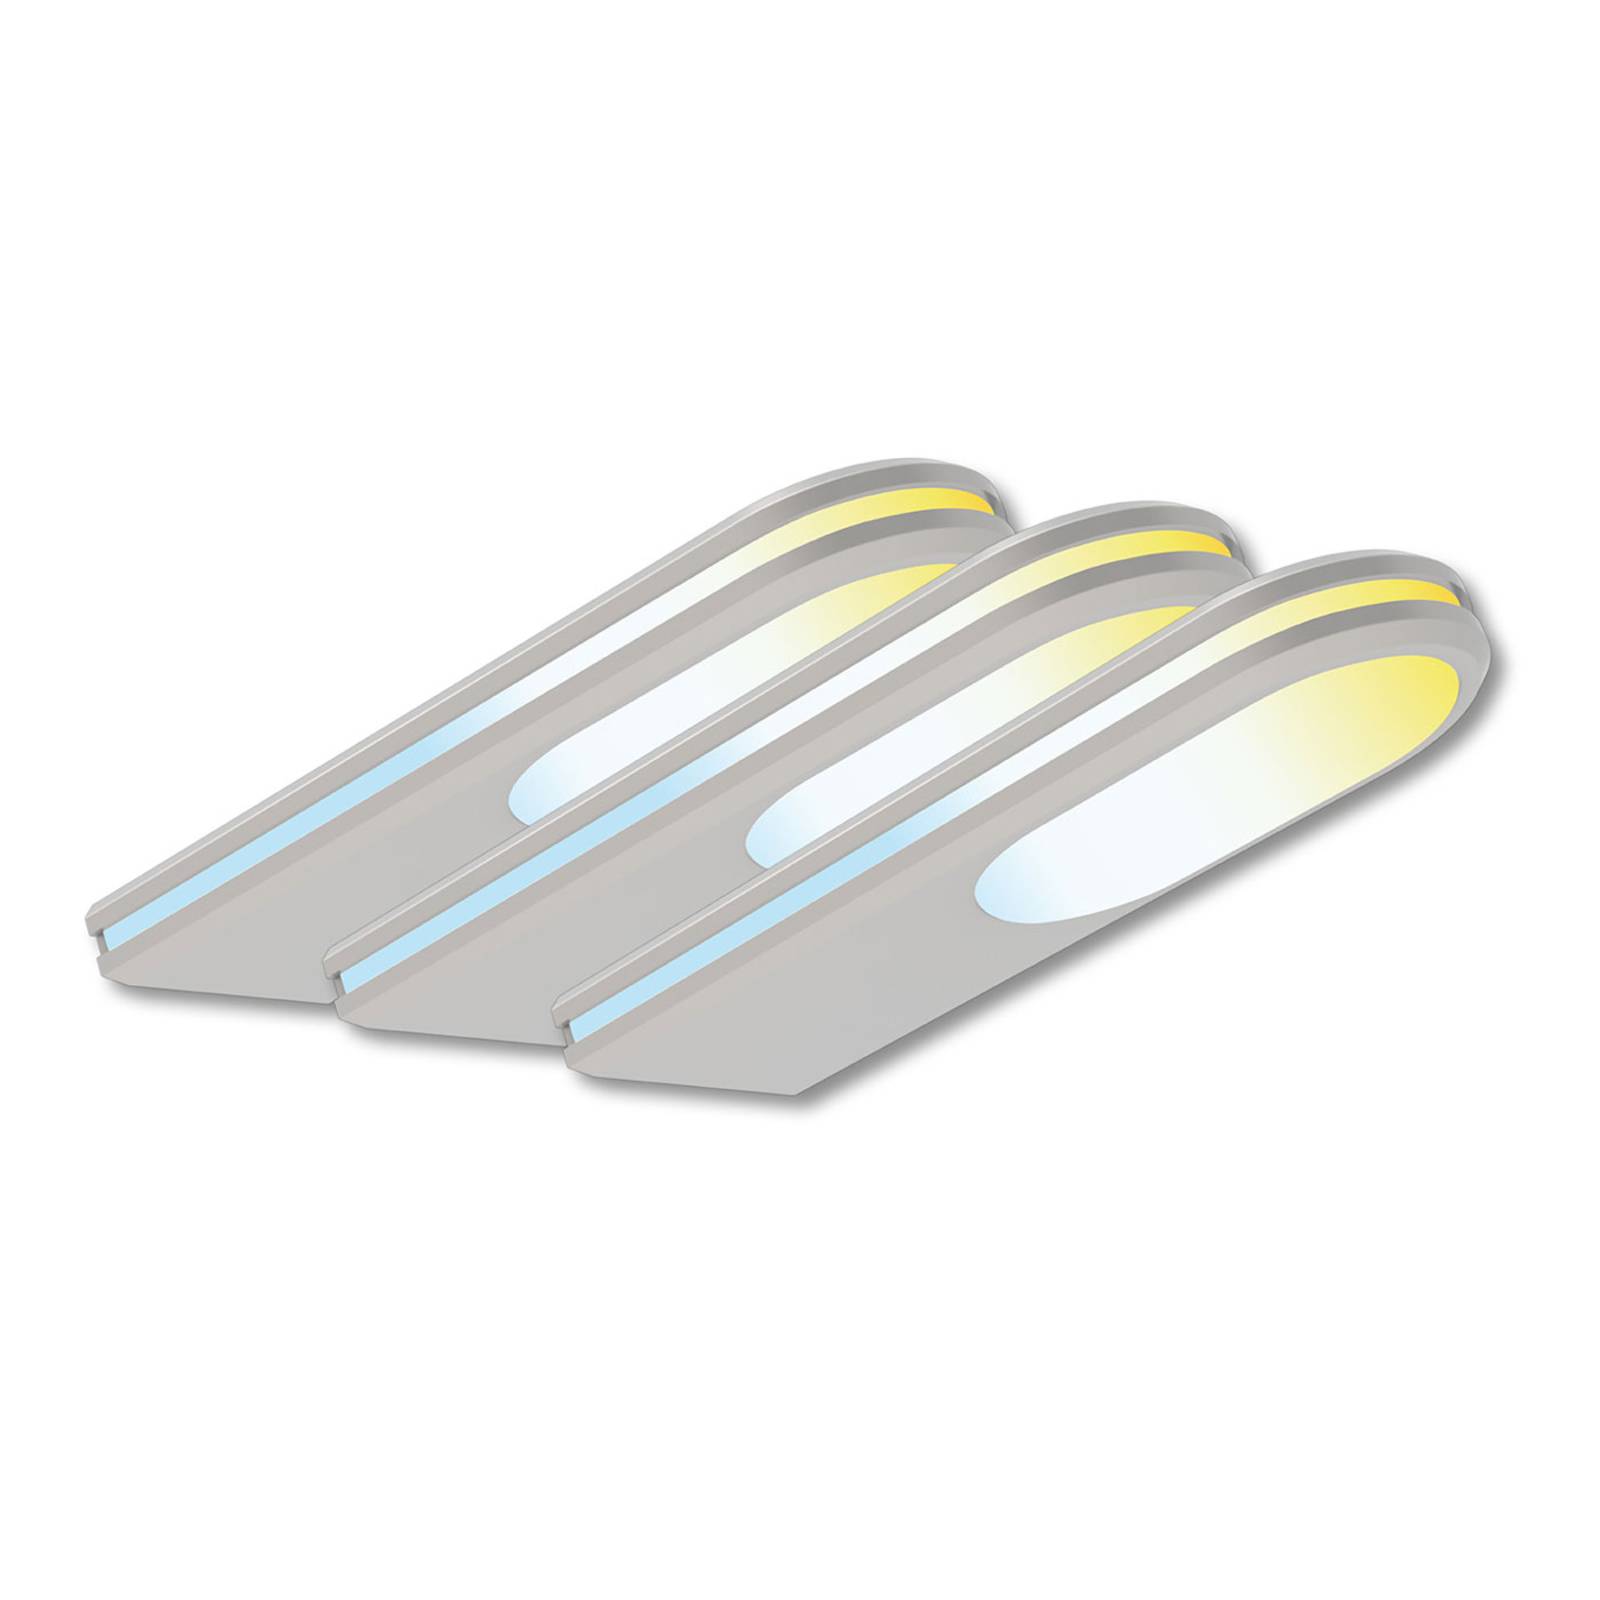 Müller Licht tint LED-Unterbauleuchte Armaro, 3er